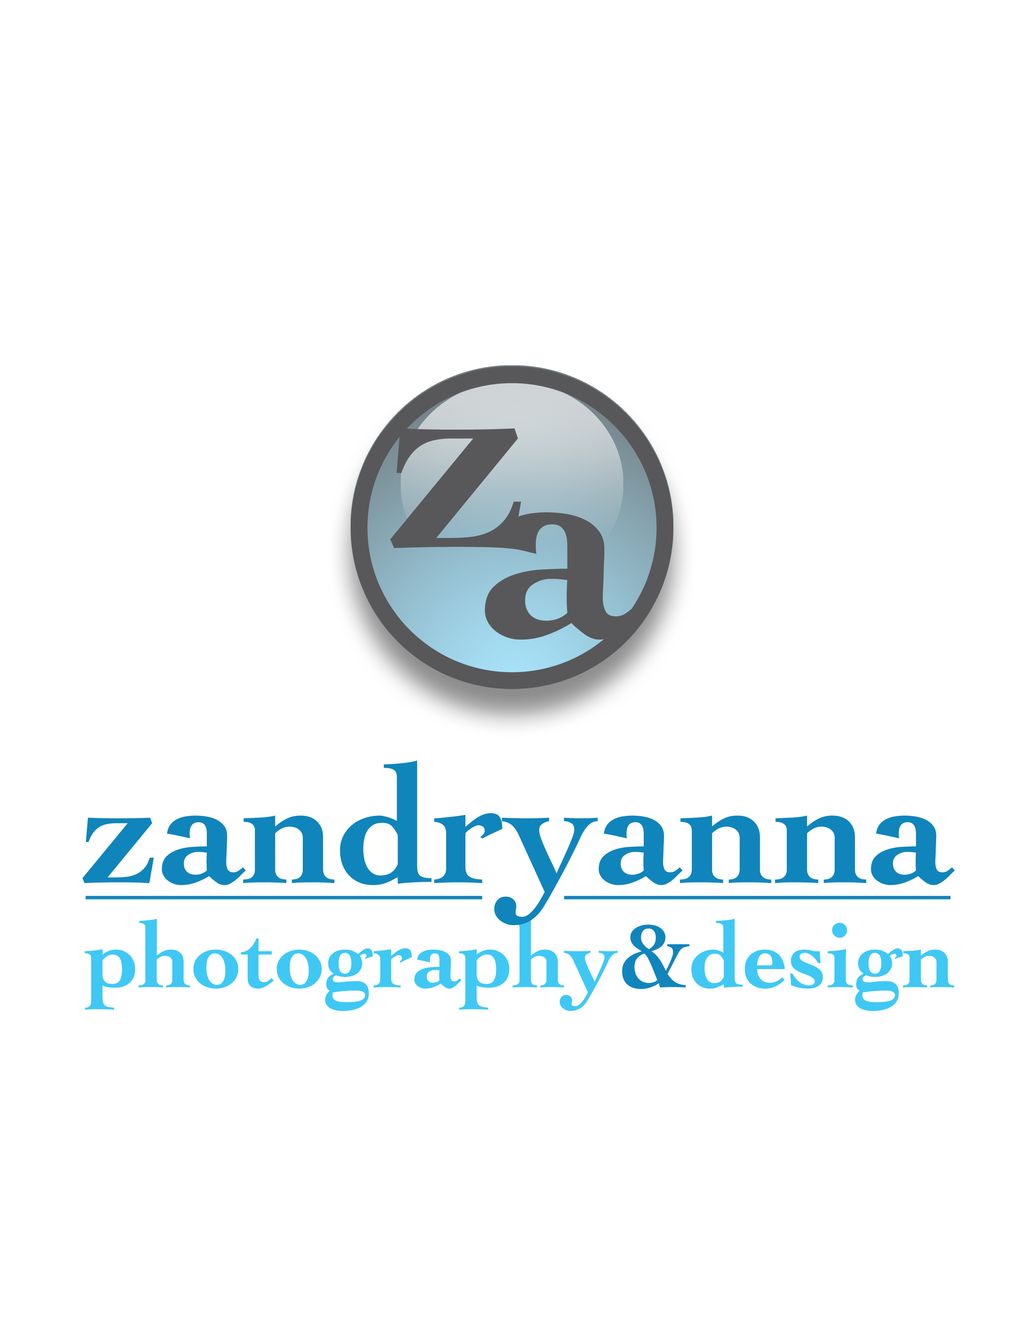 zandryanna photography&design